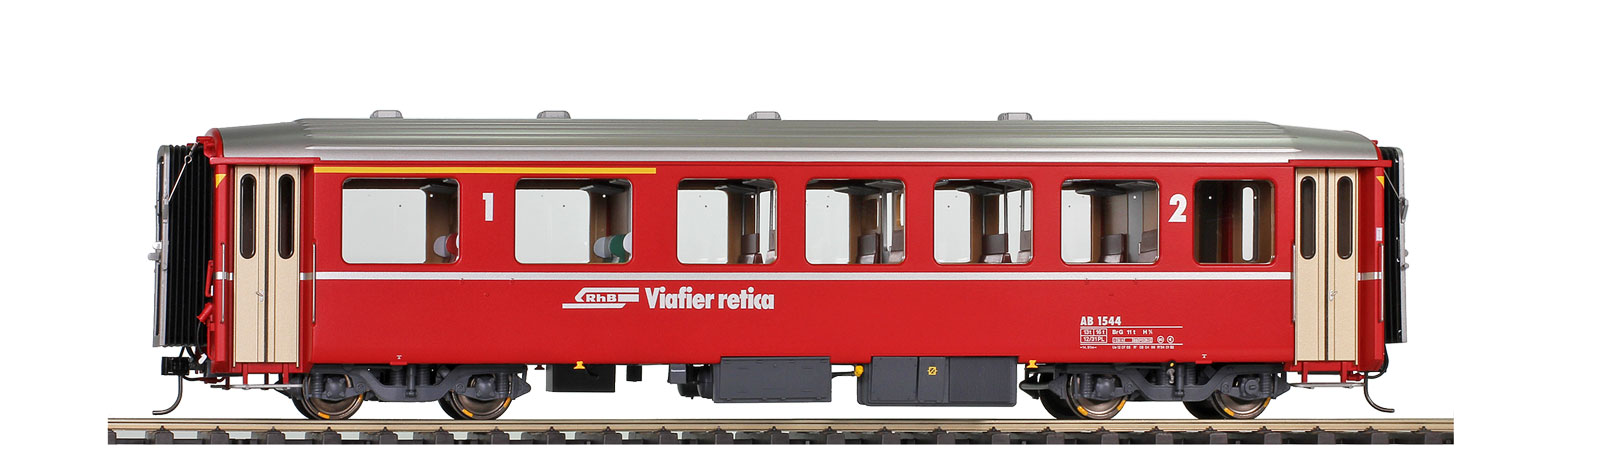 0m RhB AB 1544 EWI rot Logo 1./2. Klasse Personenwagen verkürzt für Bernina-Bahn